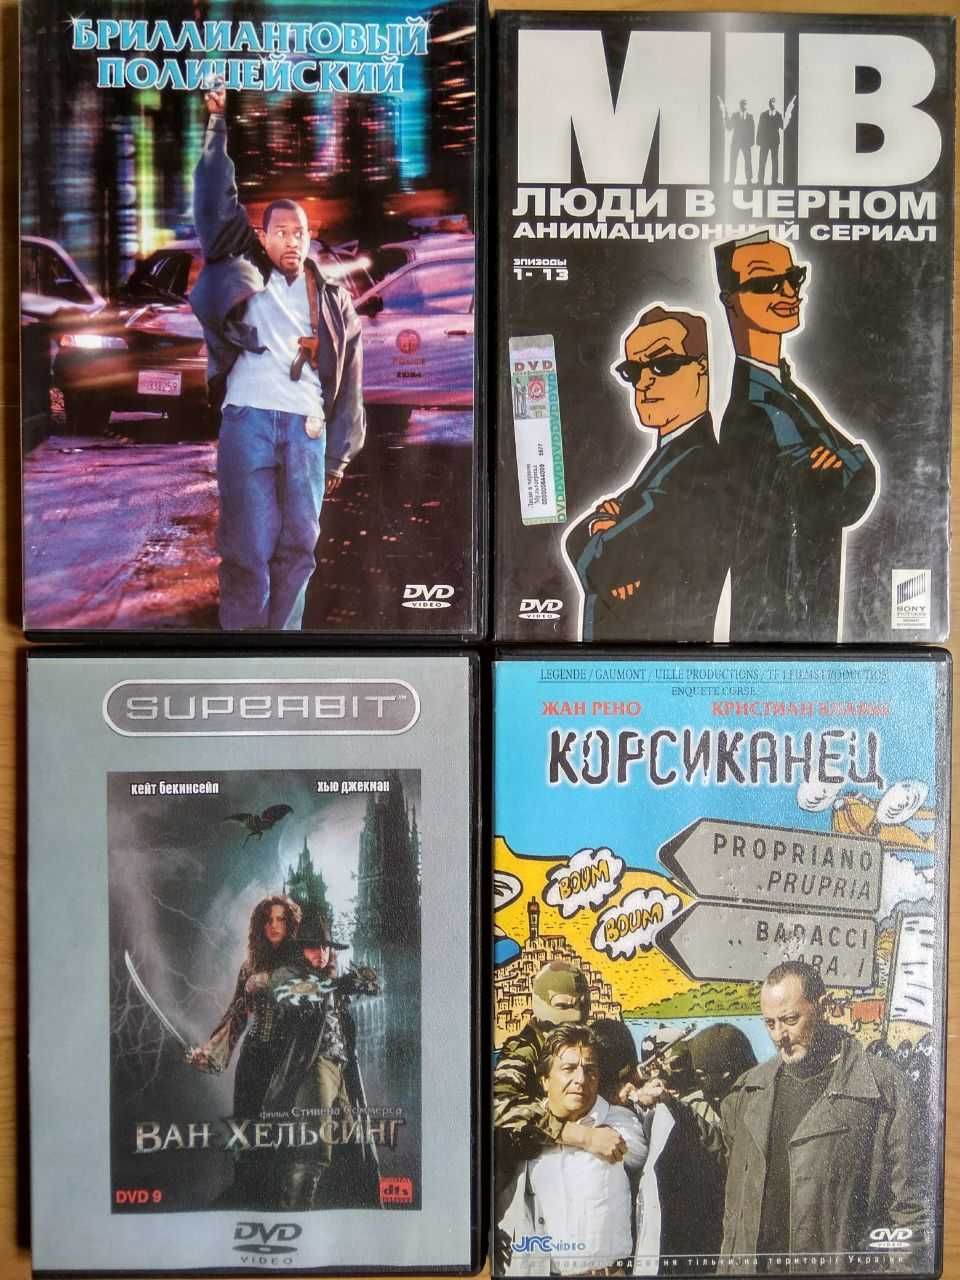 DVD диски, коллекционные издания.